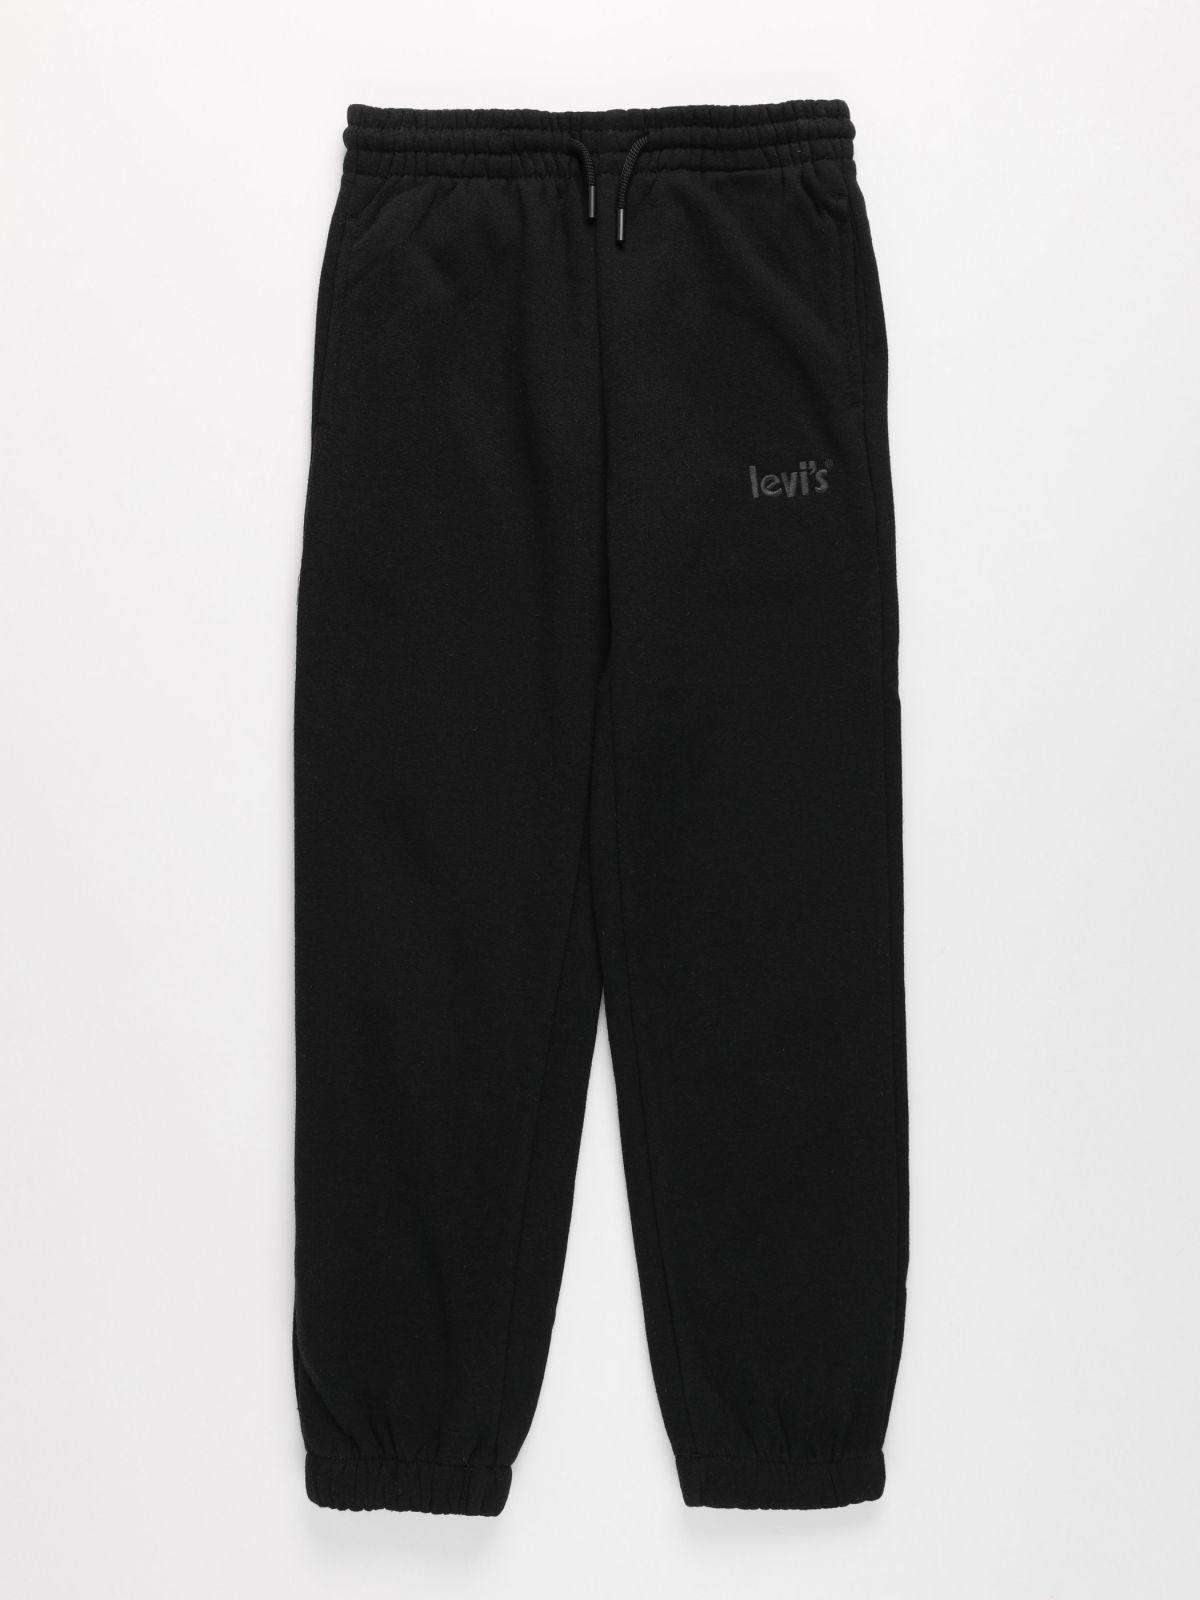  מכנסי טרנינג עם הדפס לוגו רקום / בנים של LEVIS